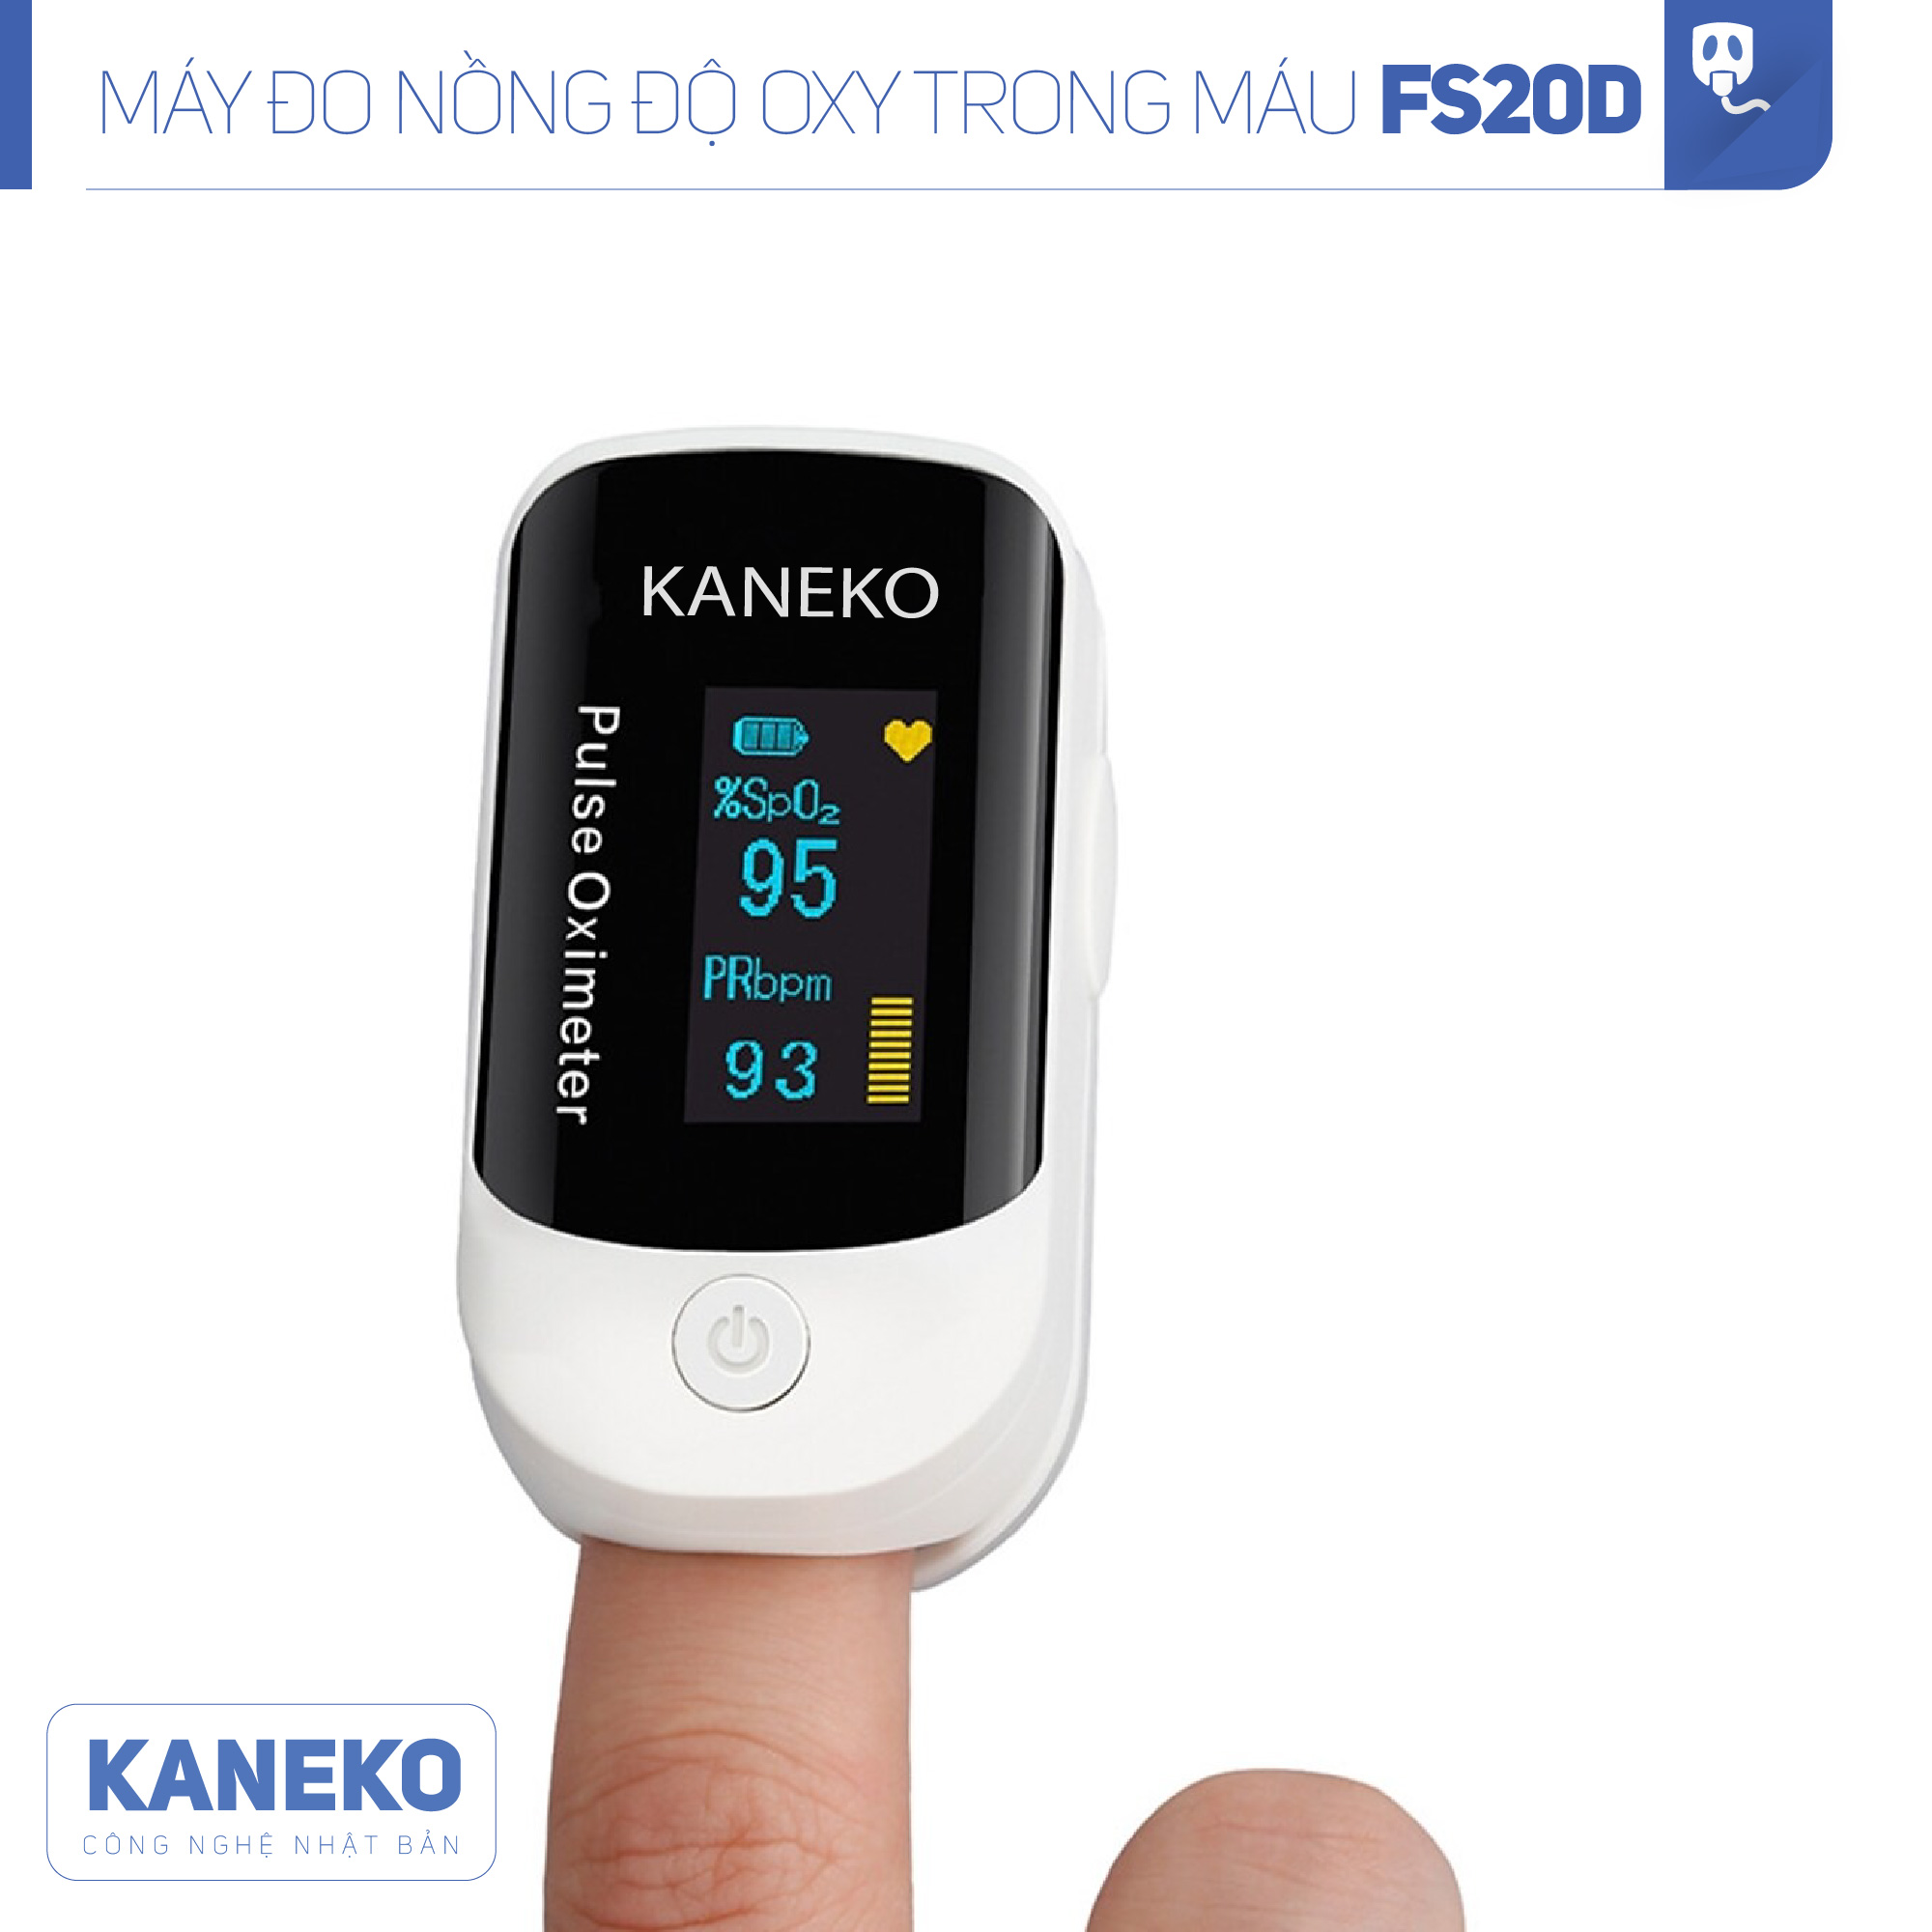 Máy đo nồng độ oxy trong máu KANEKO FS20D, SPO2, đo nhịp tim, có màn hình hiển thị rõ ràng